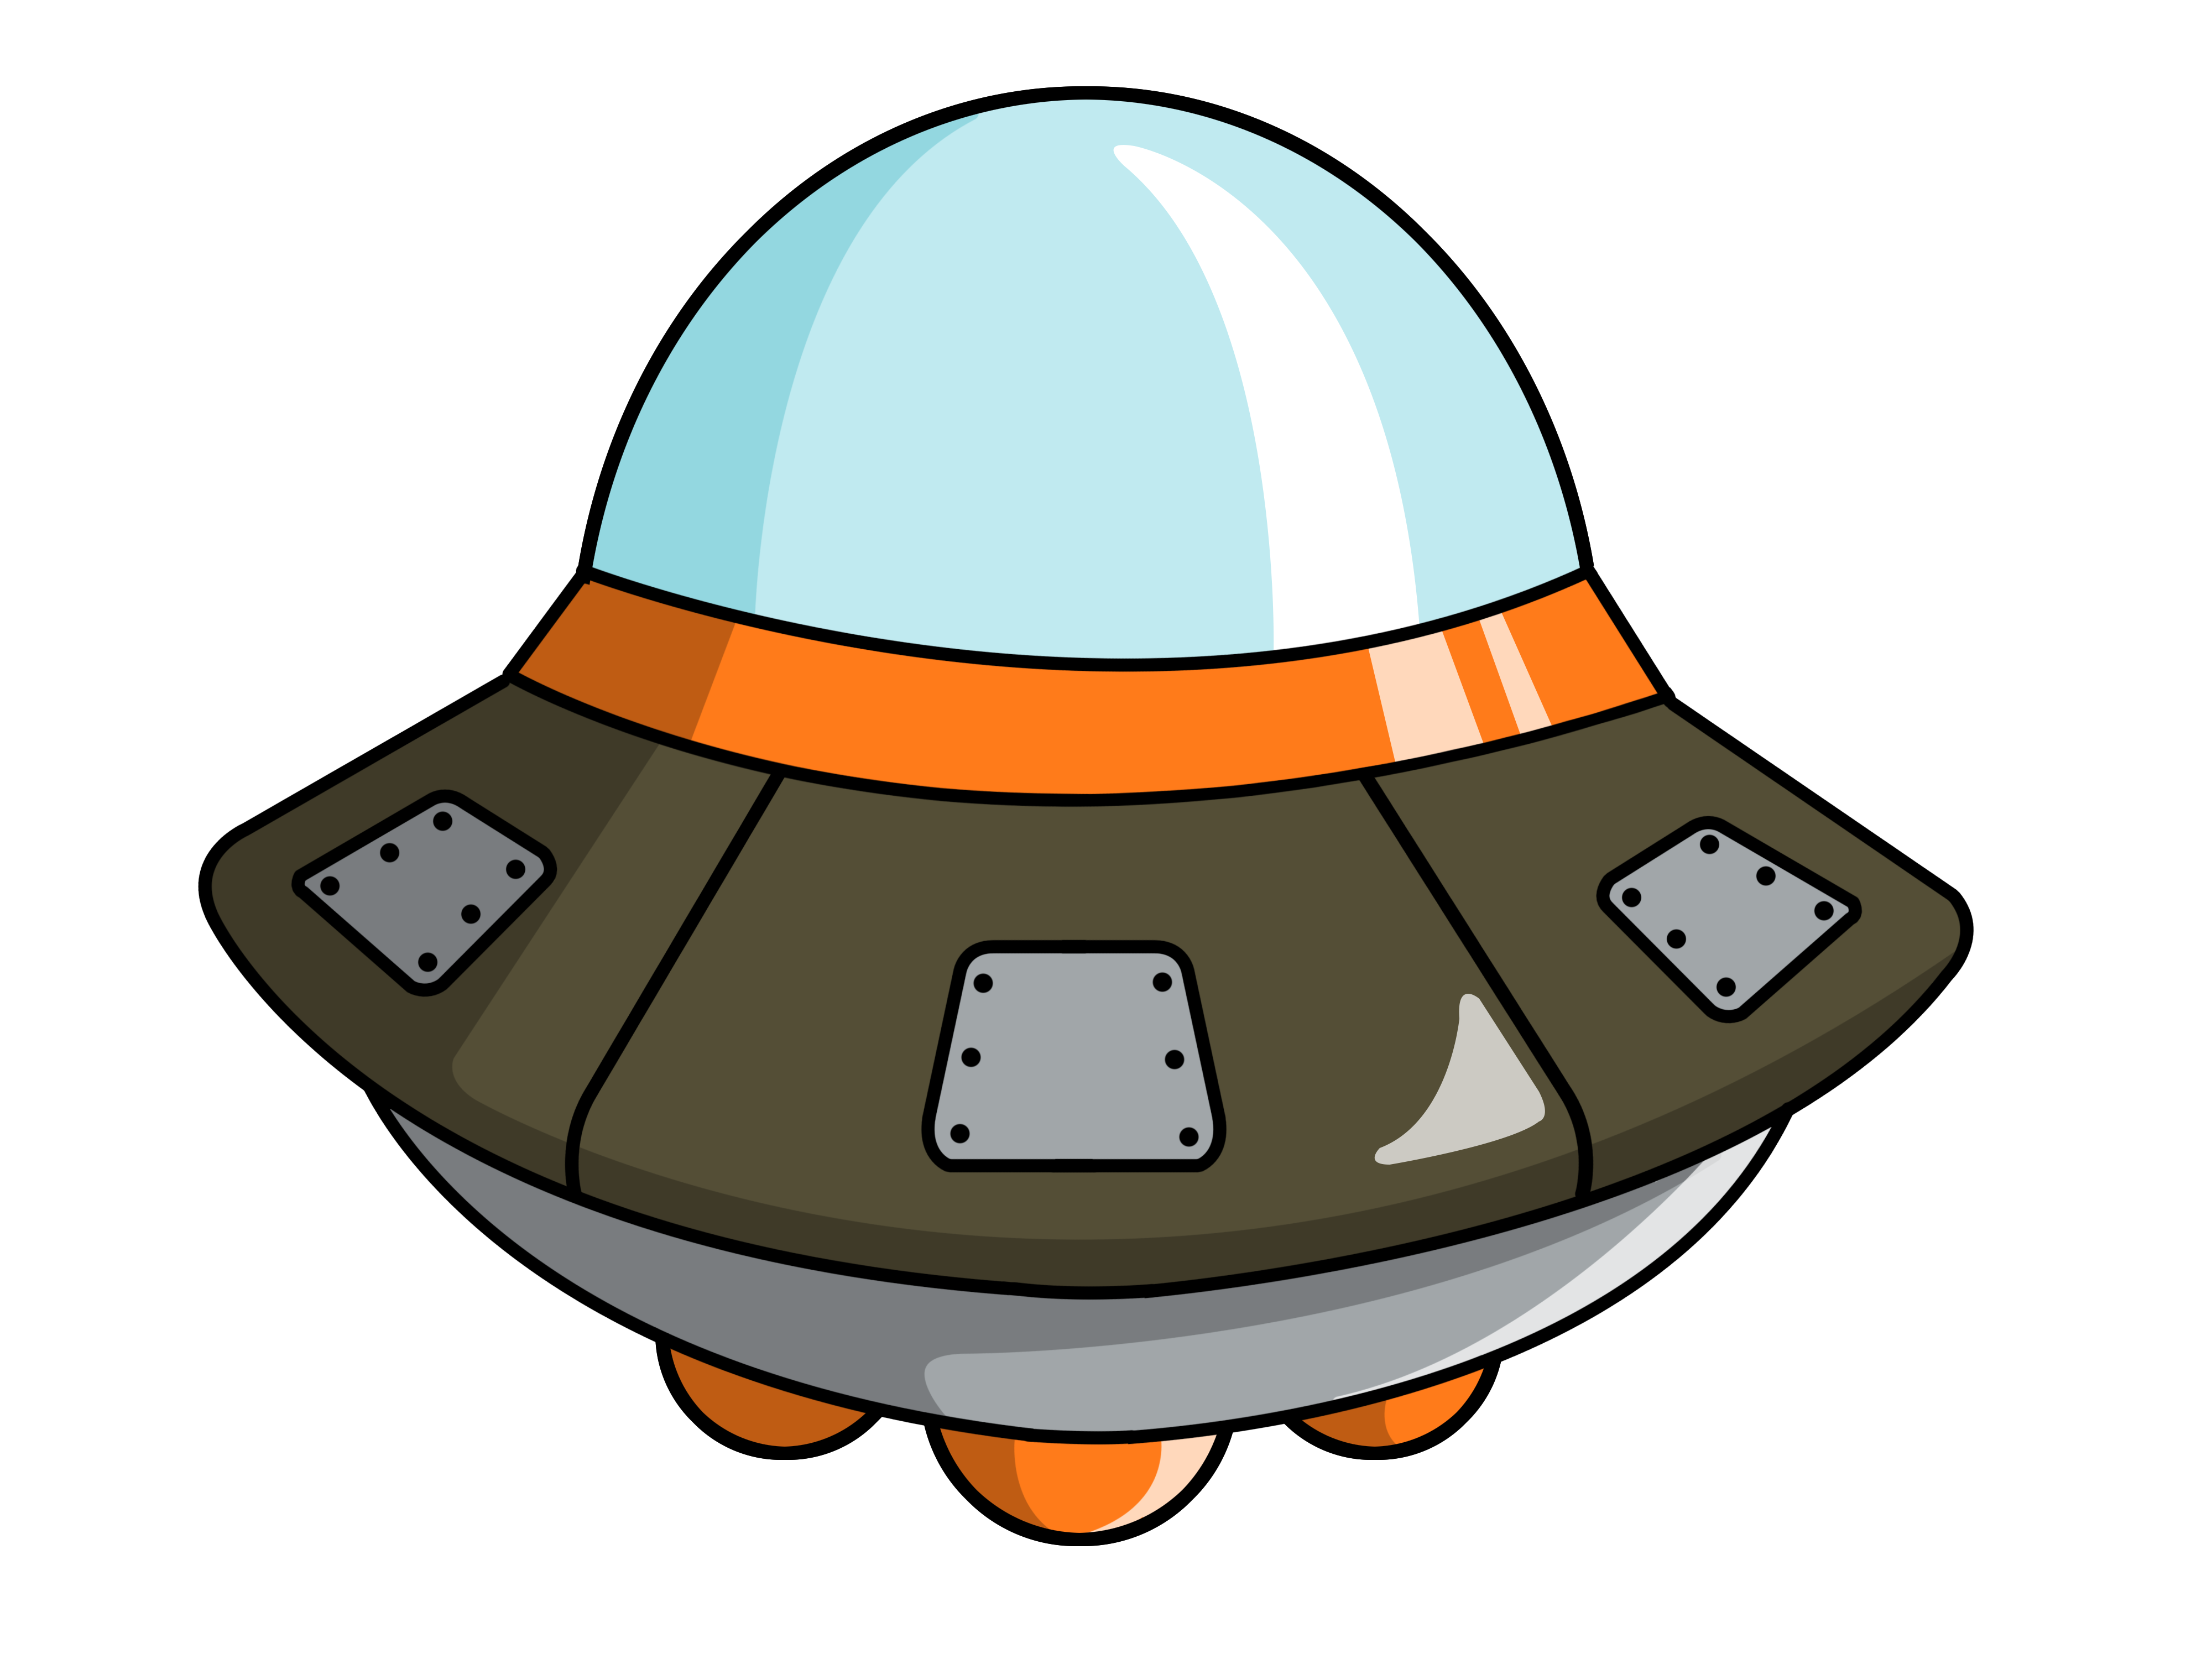 Cute spaceship clipart 2